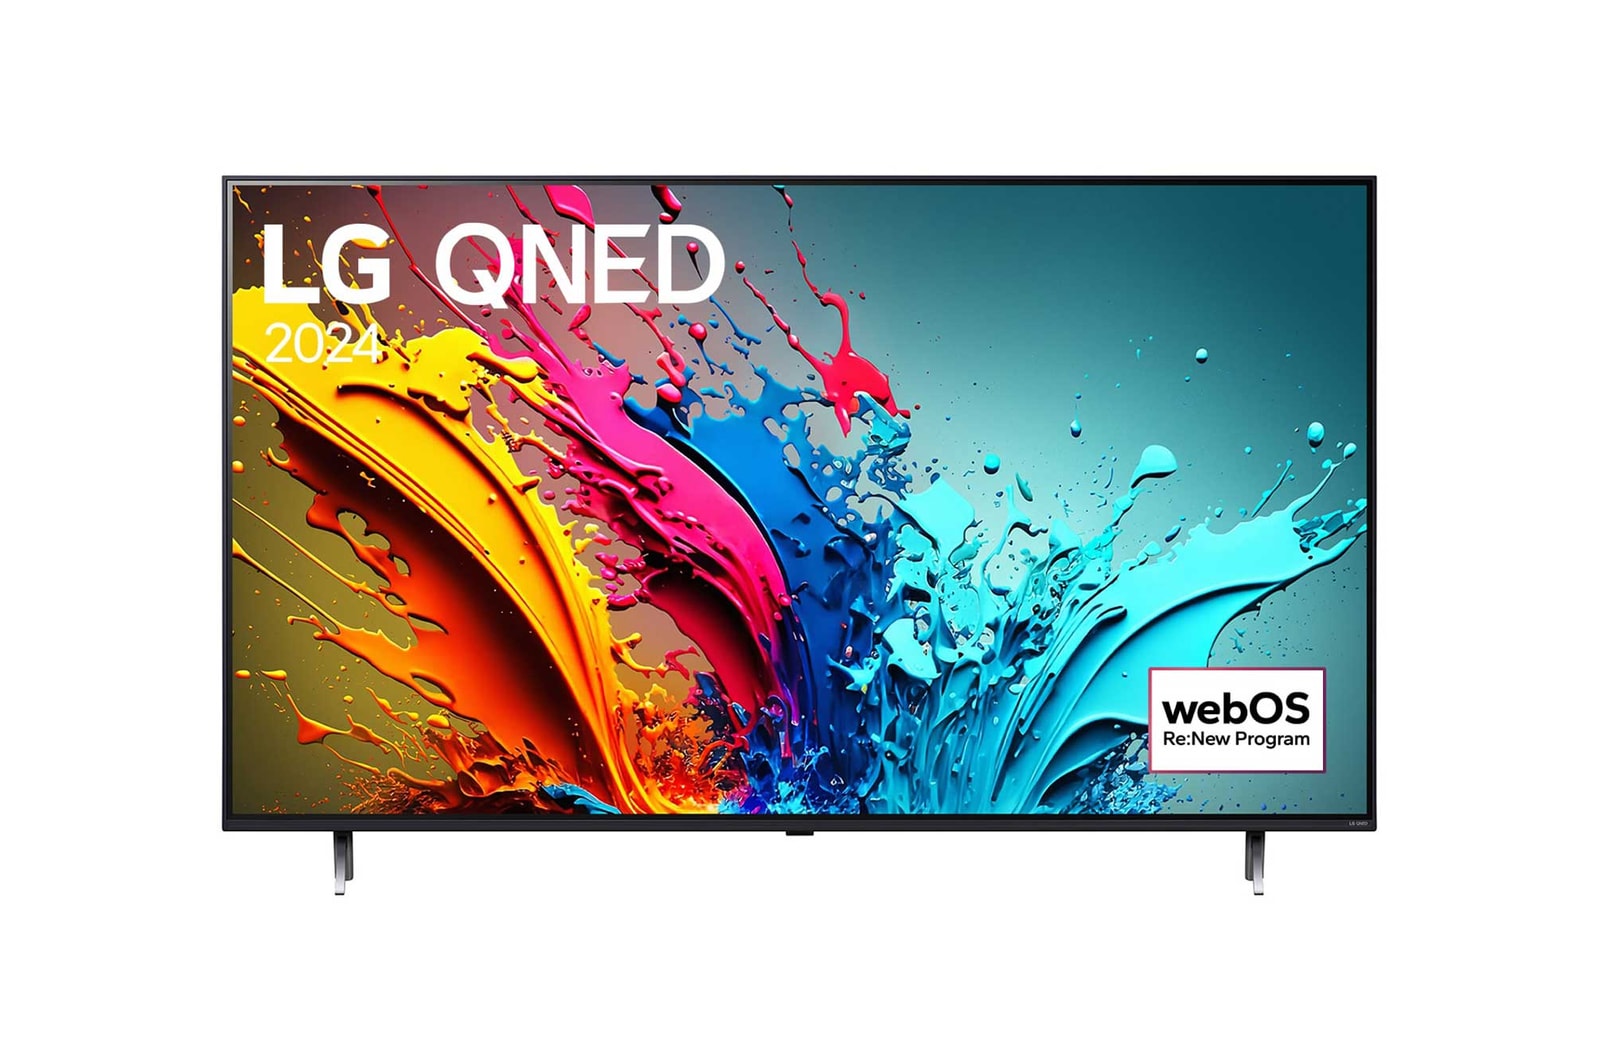 Tampak depan LG QNED TV, QNED86 dengan teks LG QNED, 2024, dan logo webOS Re:New Program di layar